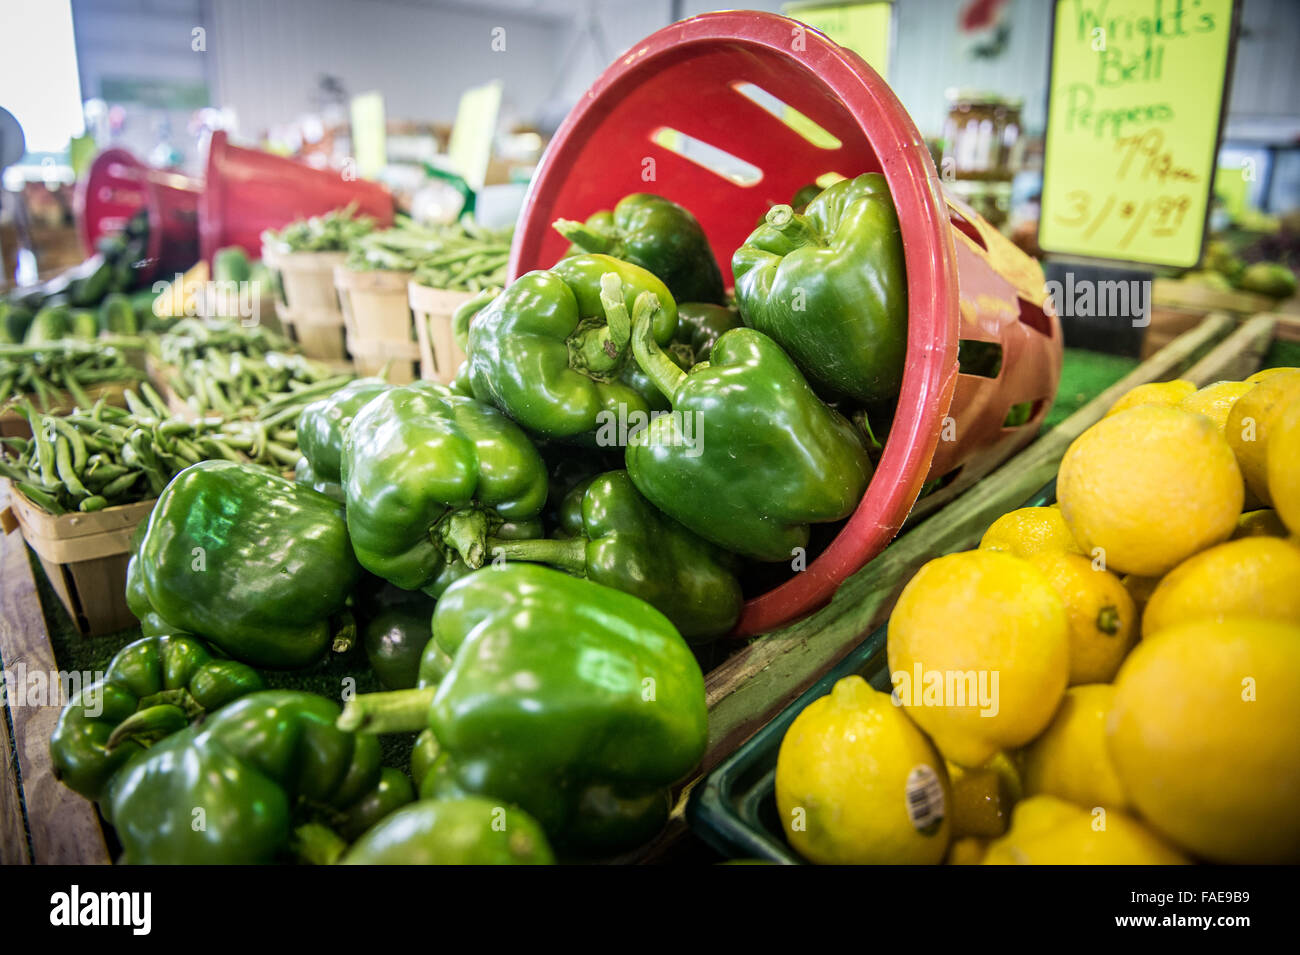 Produce at a market Stock Photo